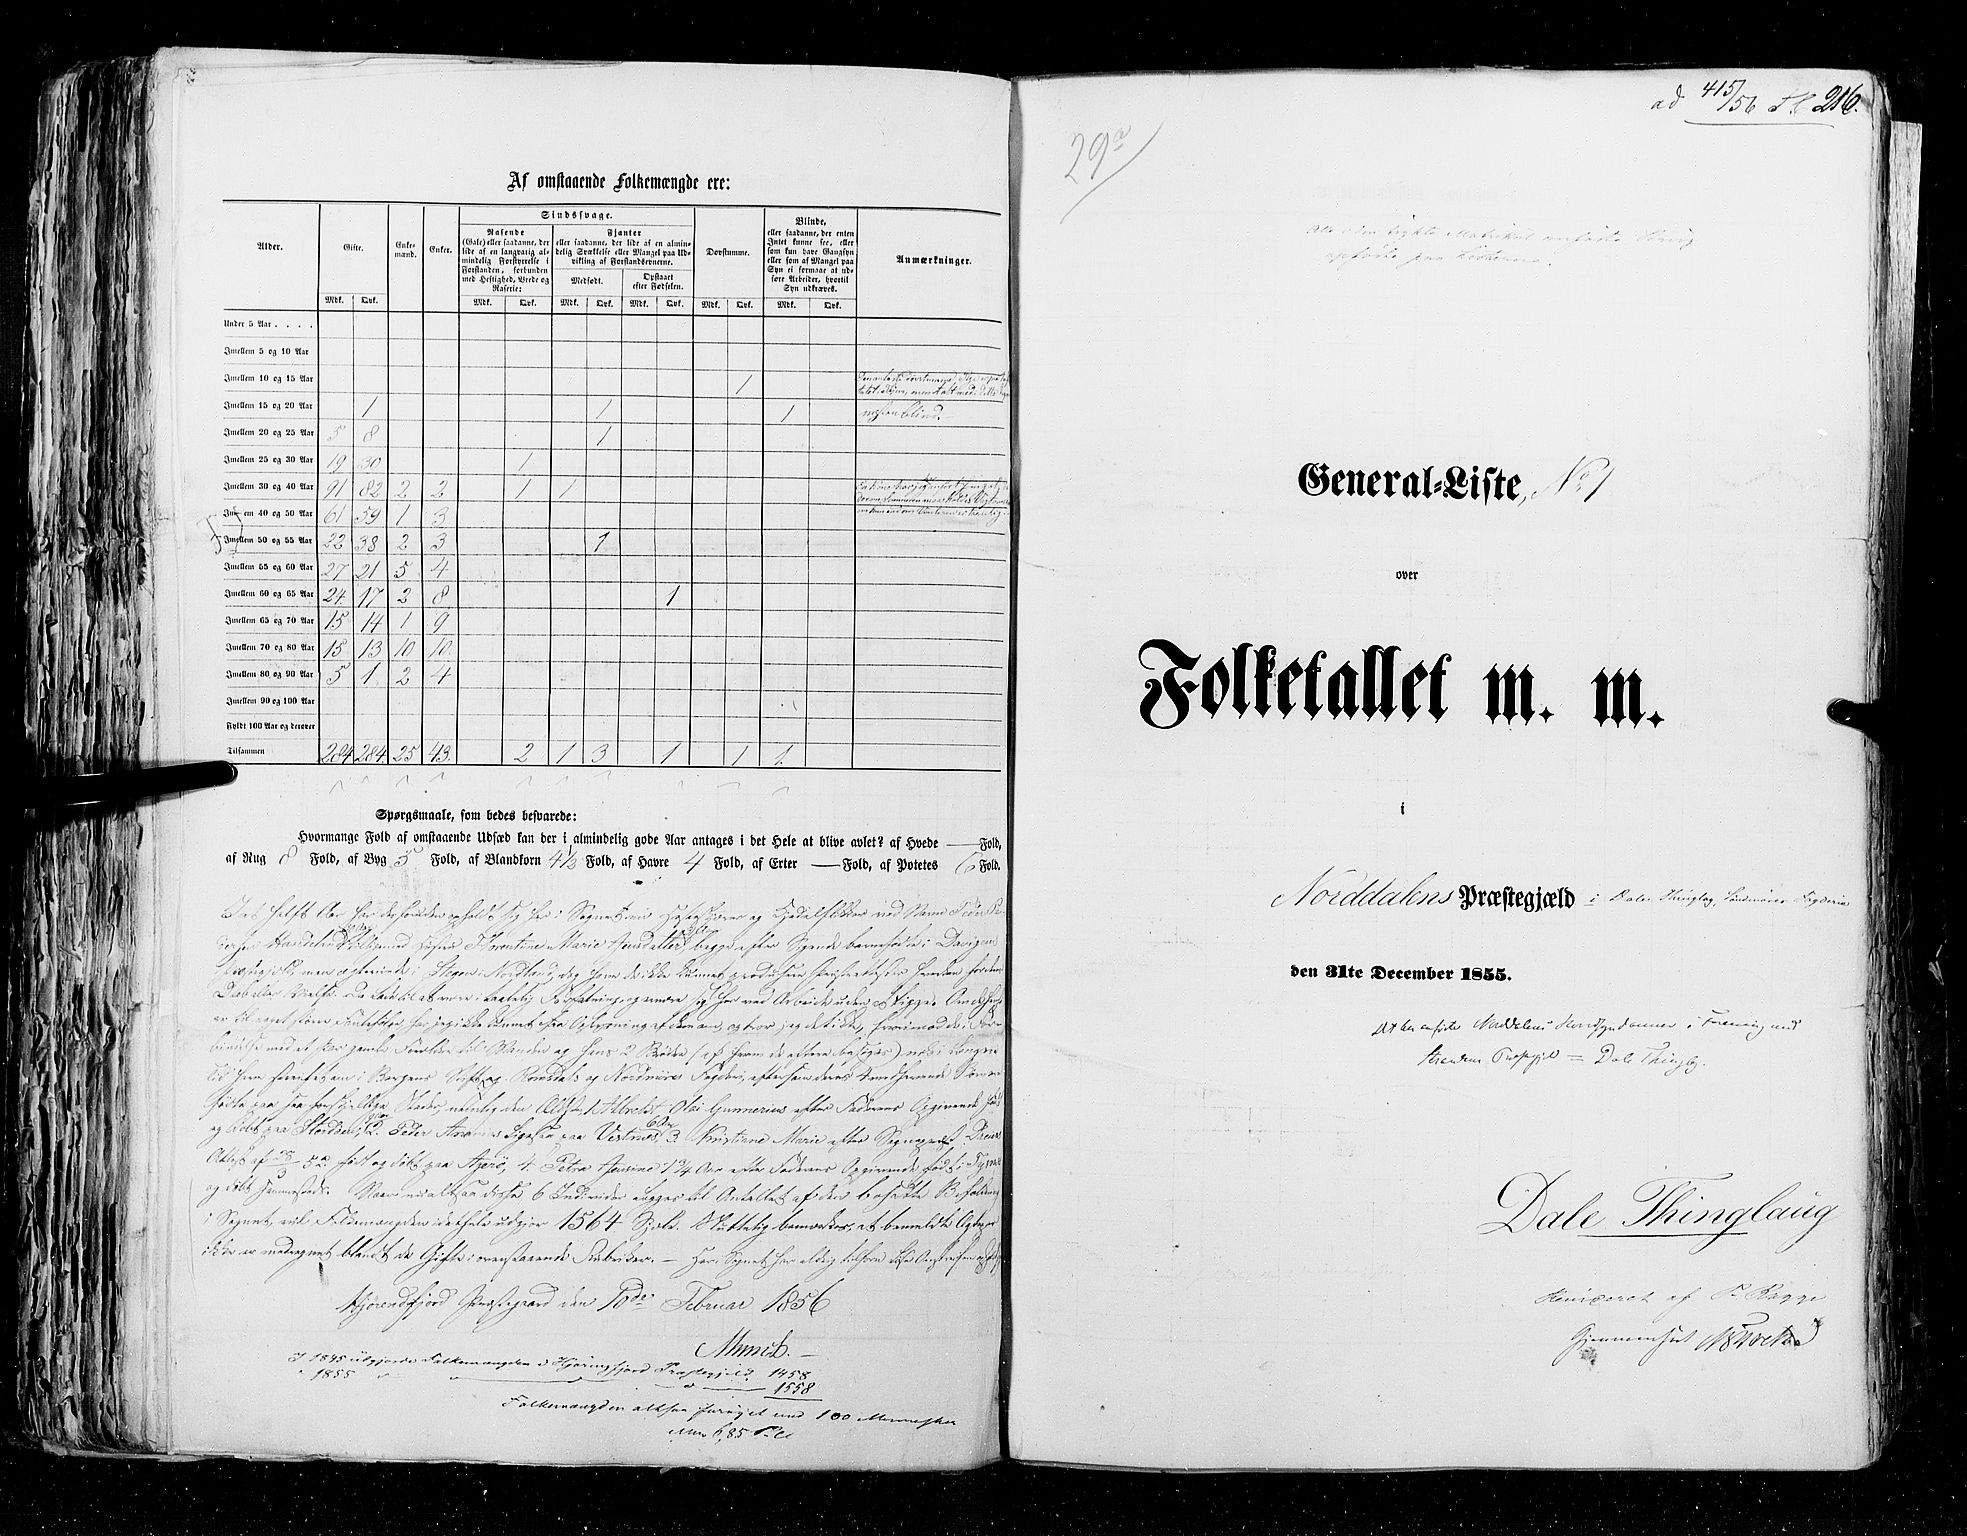 RA, Census 1855, vol. 5: Nordre Bergenhus amt, Romsdal amt og Søndre Trondhjem amt, 1855, p. 216